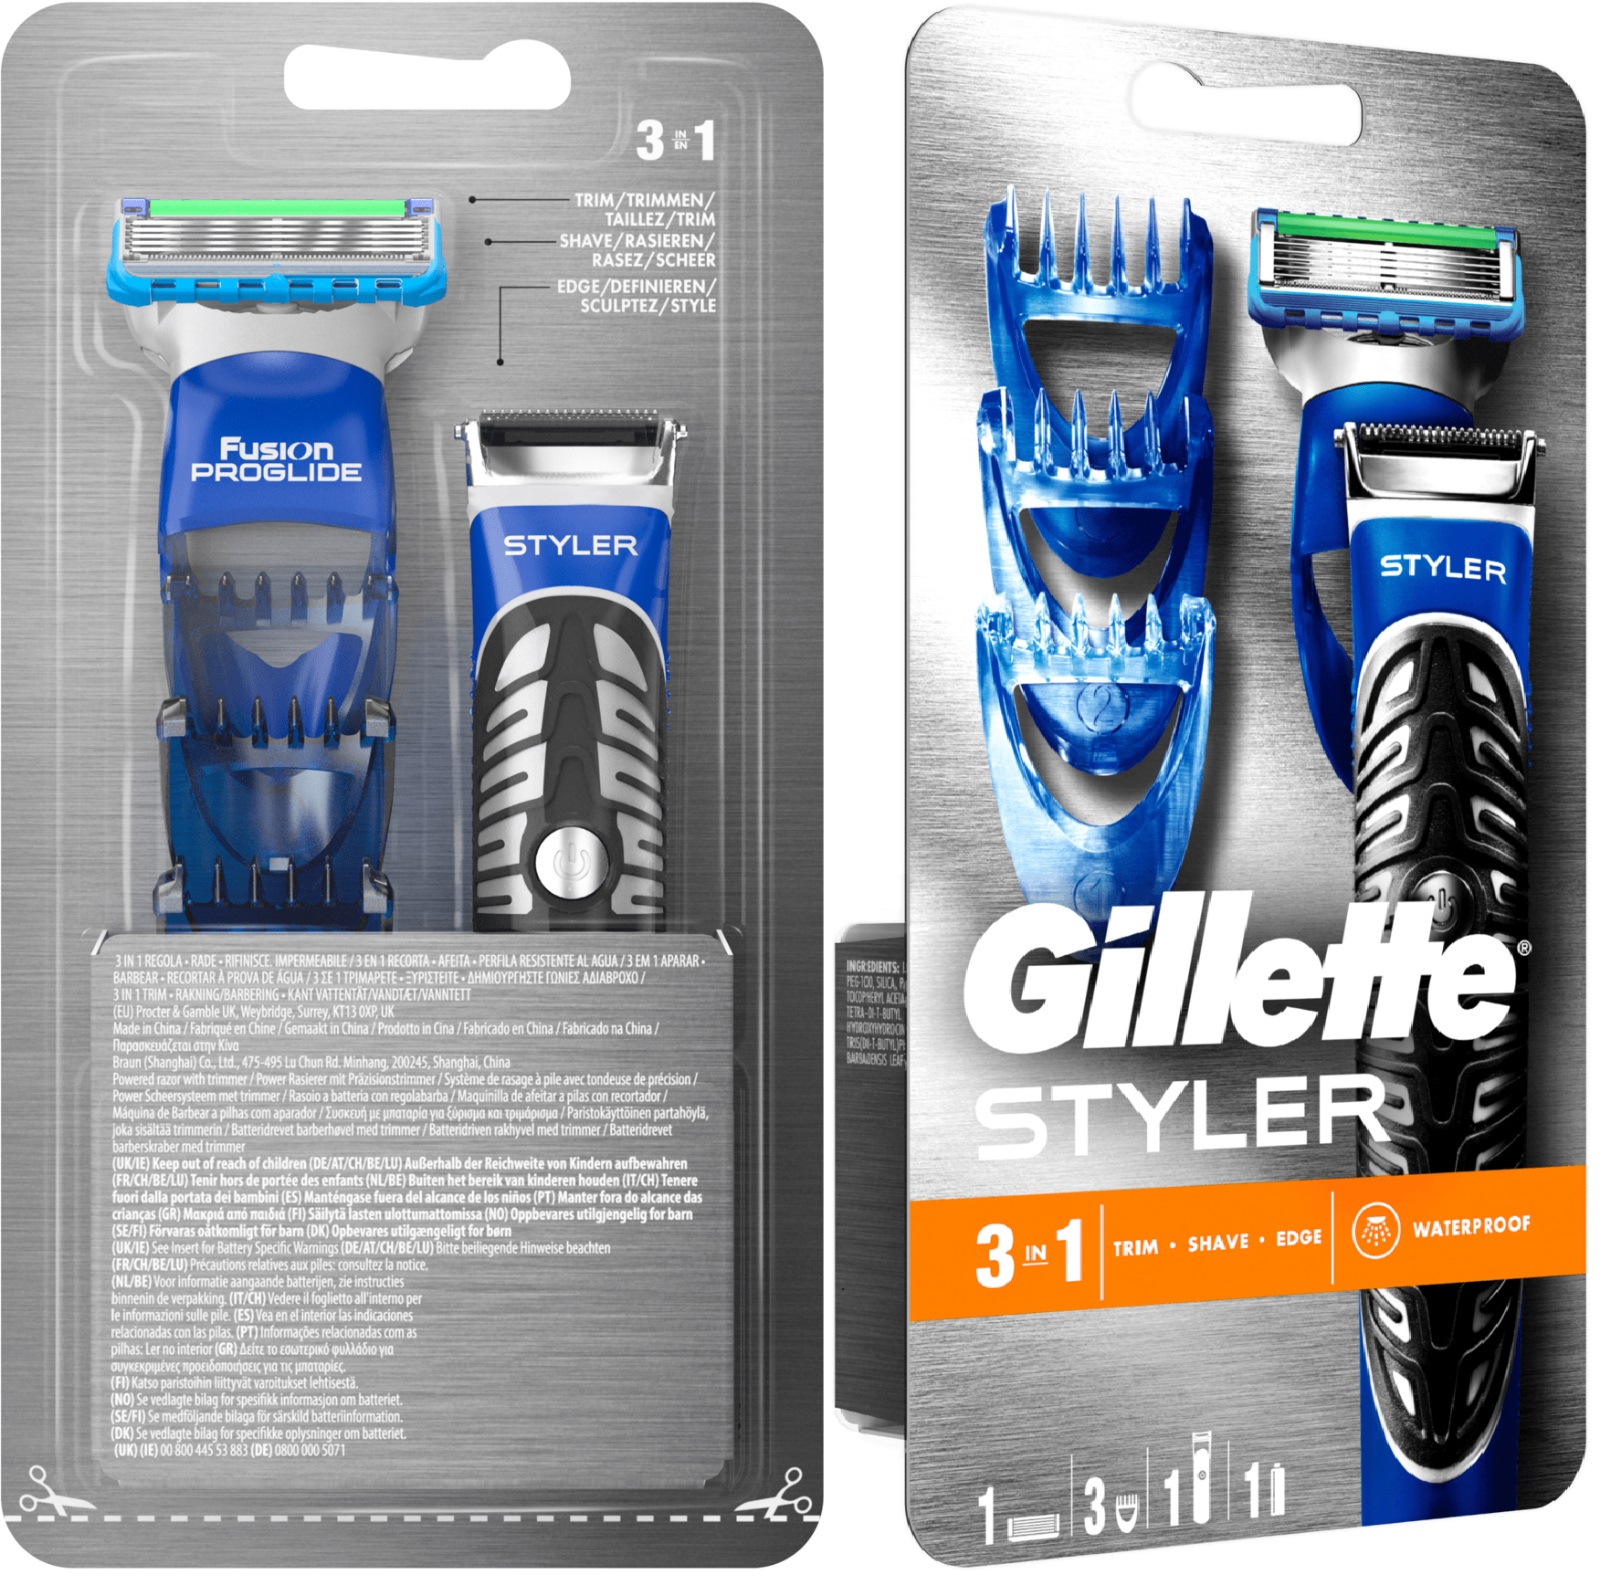 Gillette Fusion Proglide 3-in-1 Styler